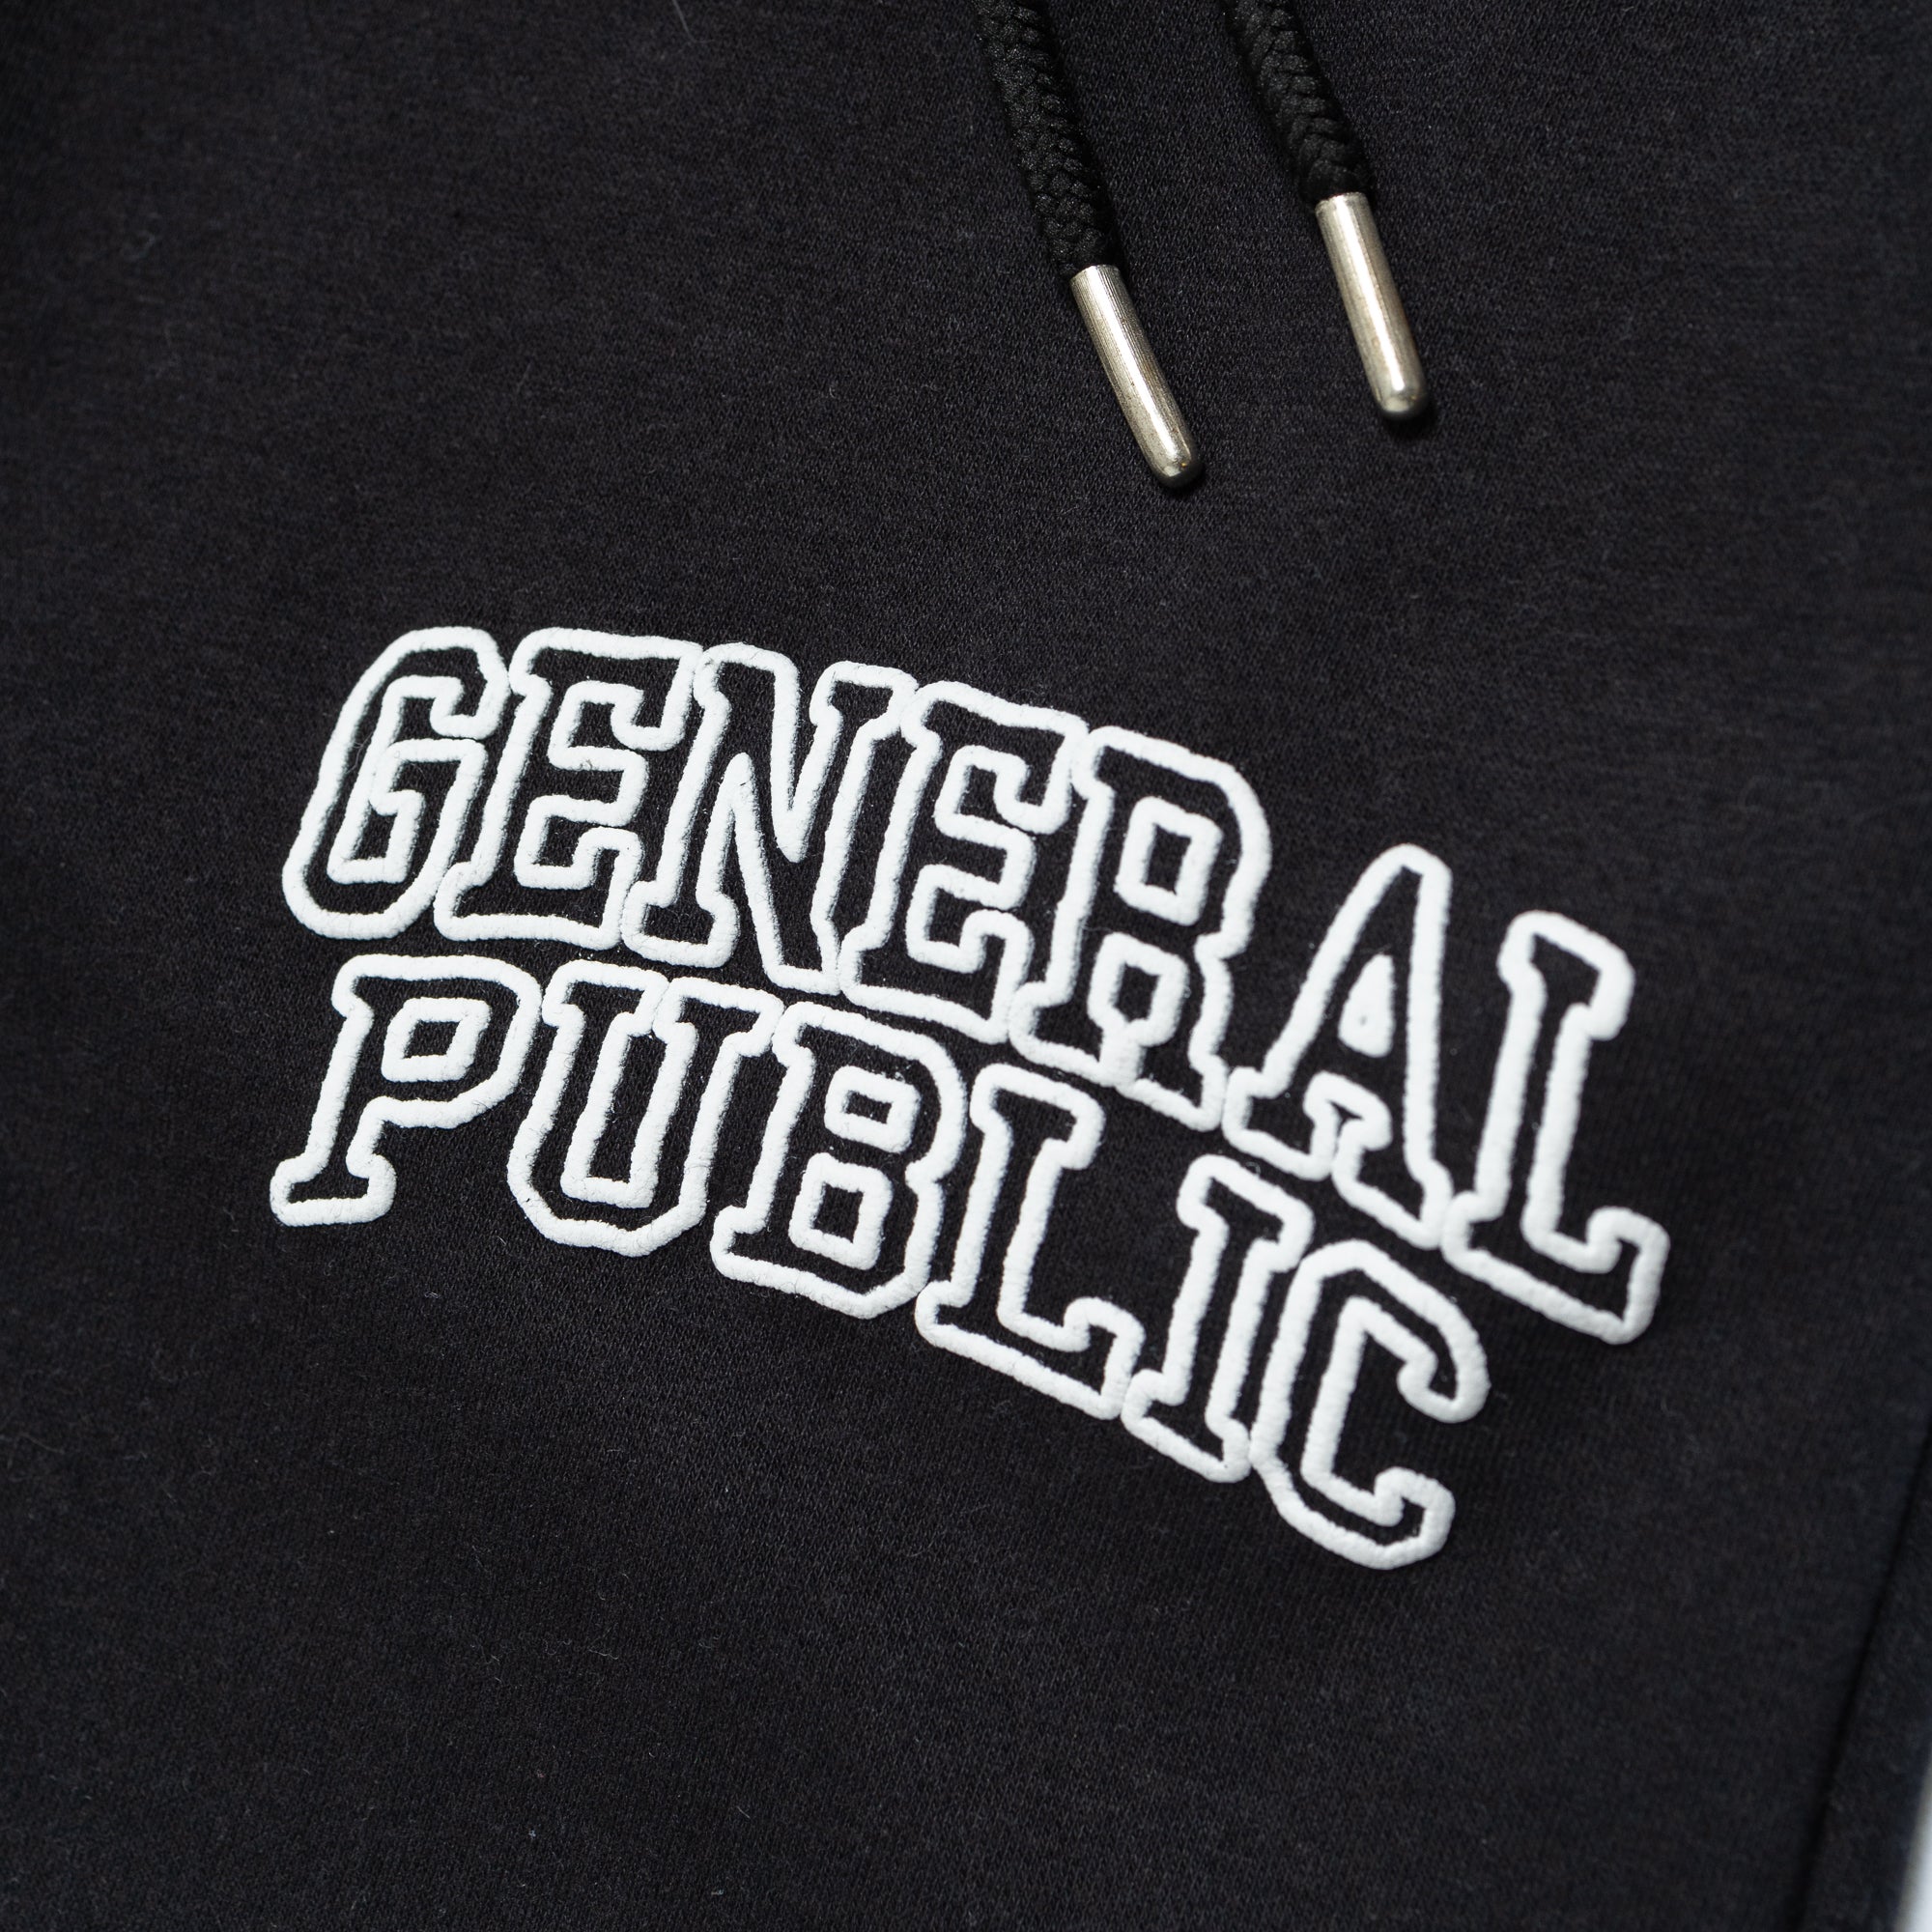 General Public Uniform Sweats 'Black'